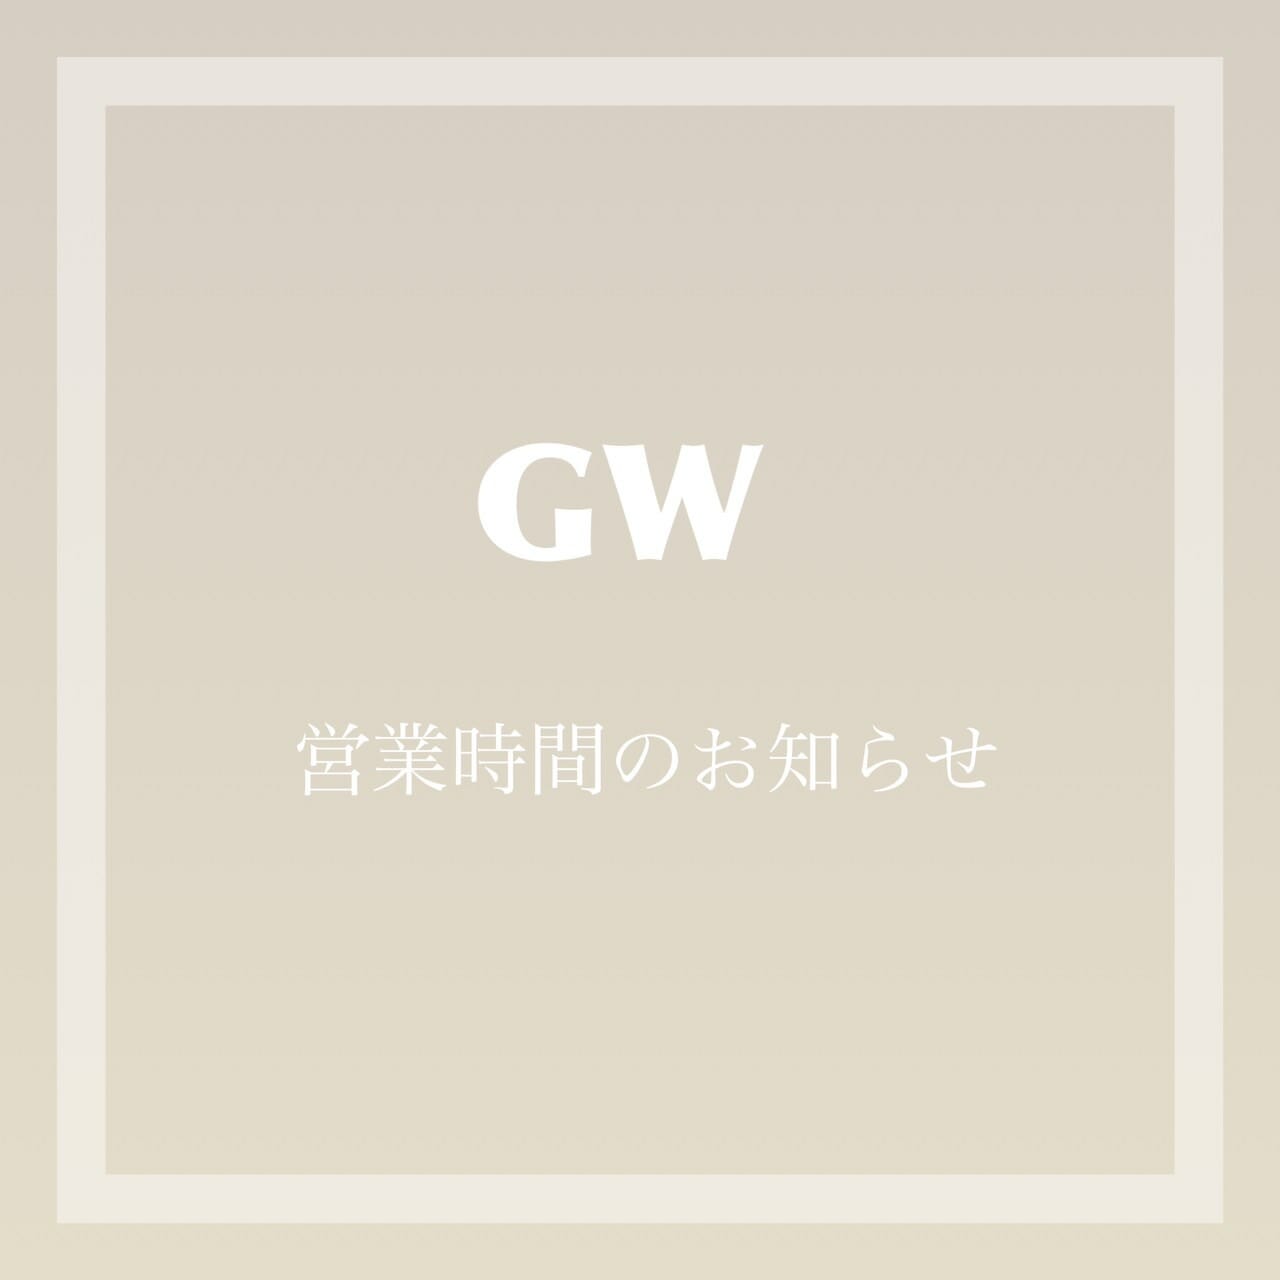 GW(ゴールデンウィーク）営業時間のお知らせ